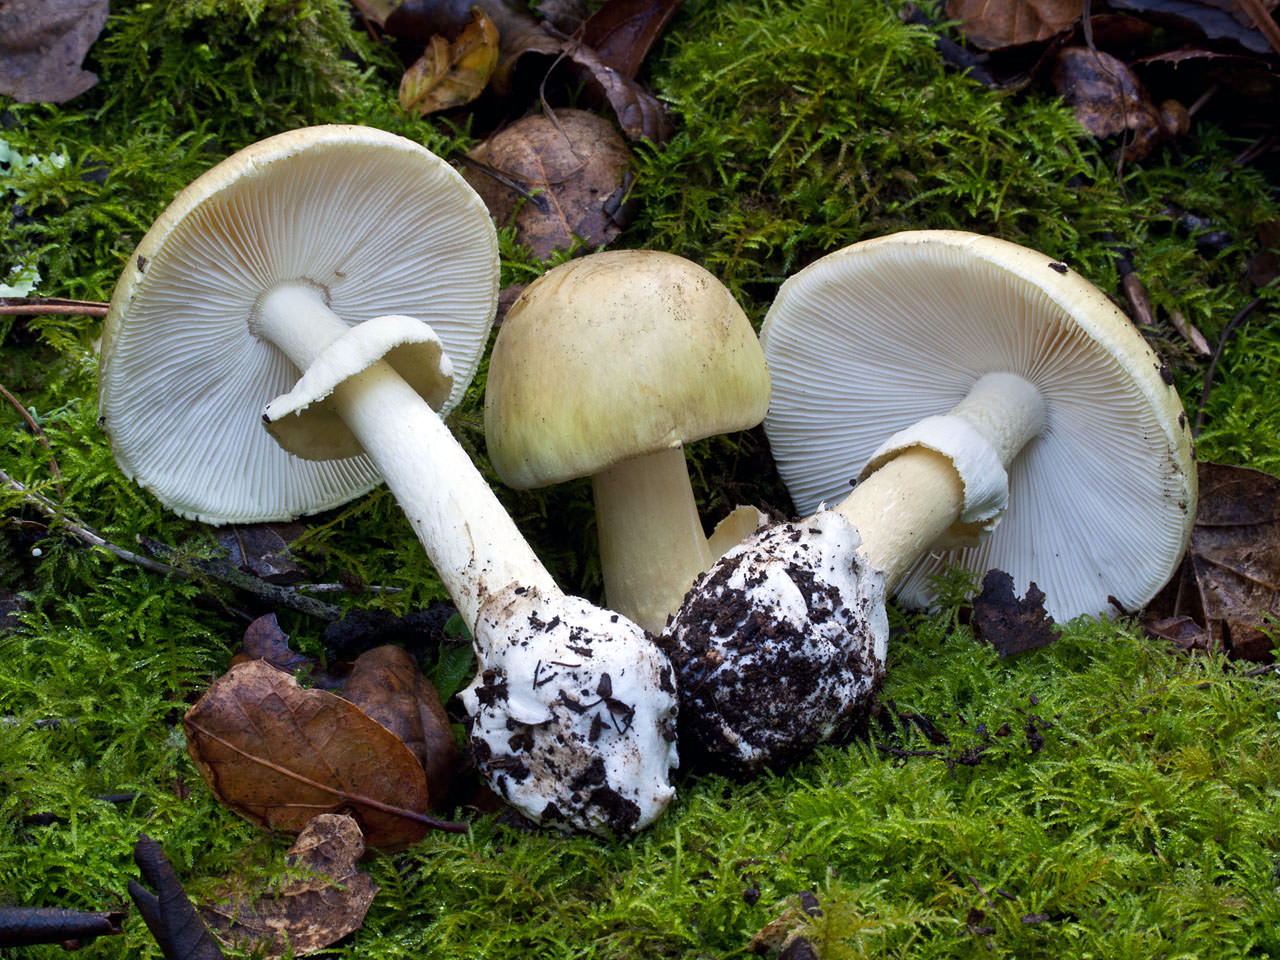 Многообразие шляпочных грибов: особенности и описание